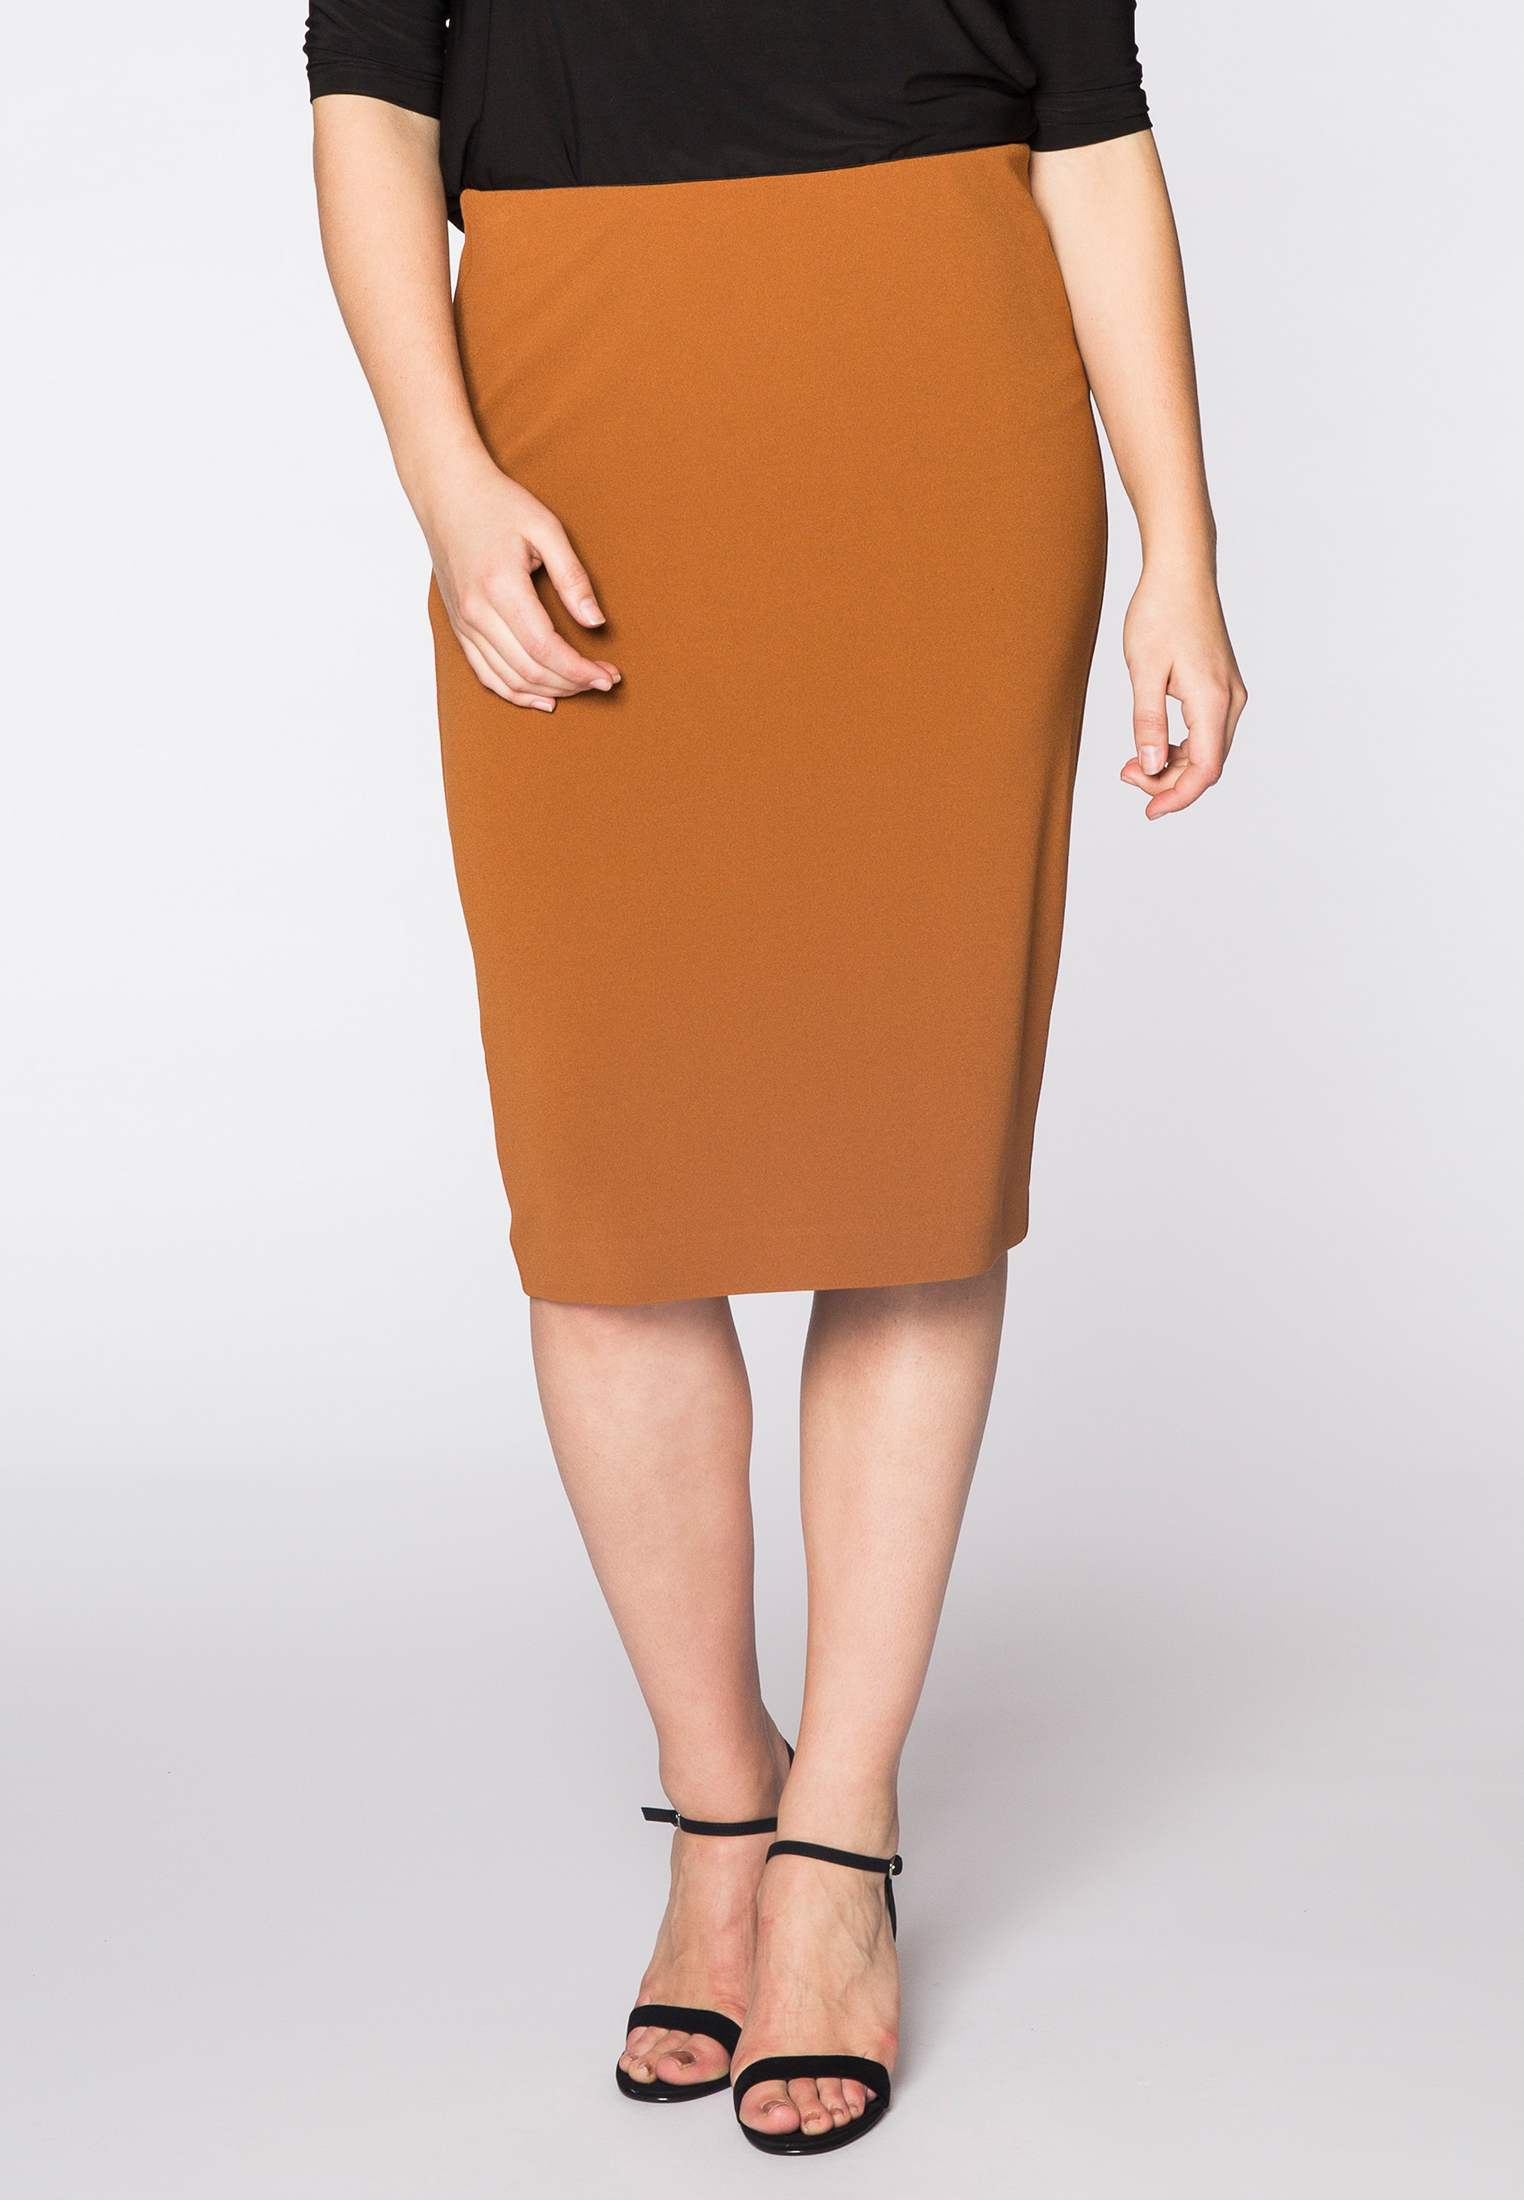 Skirt zip midback cr?pe 54/56 brown